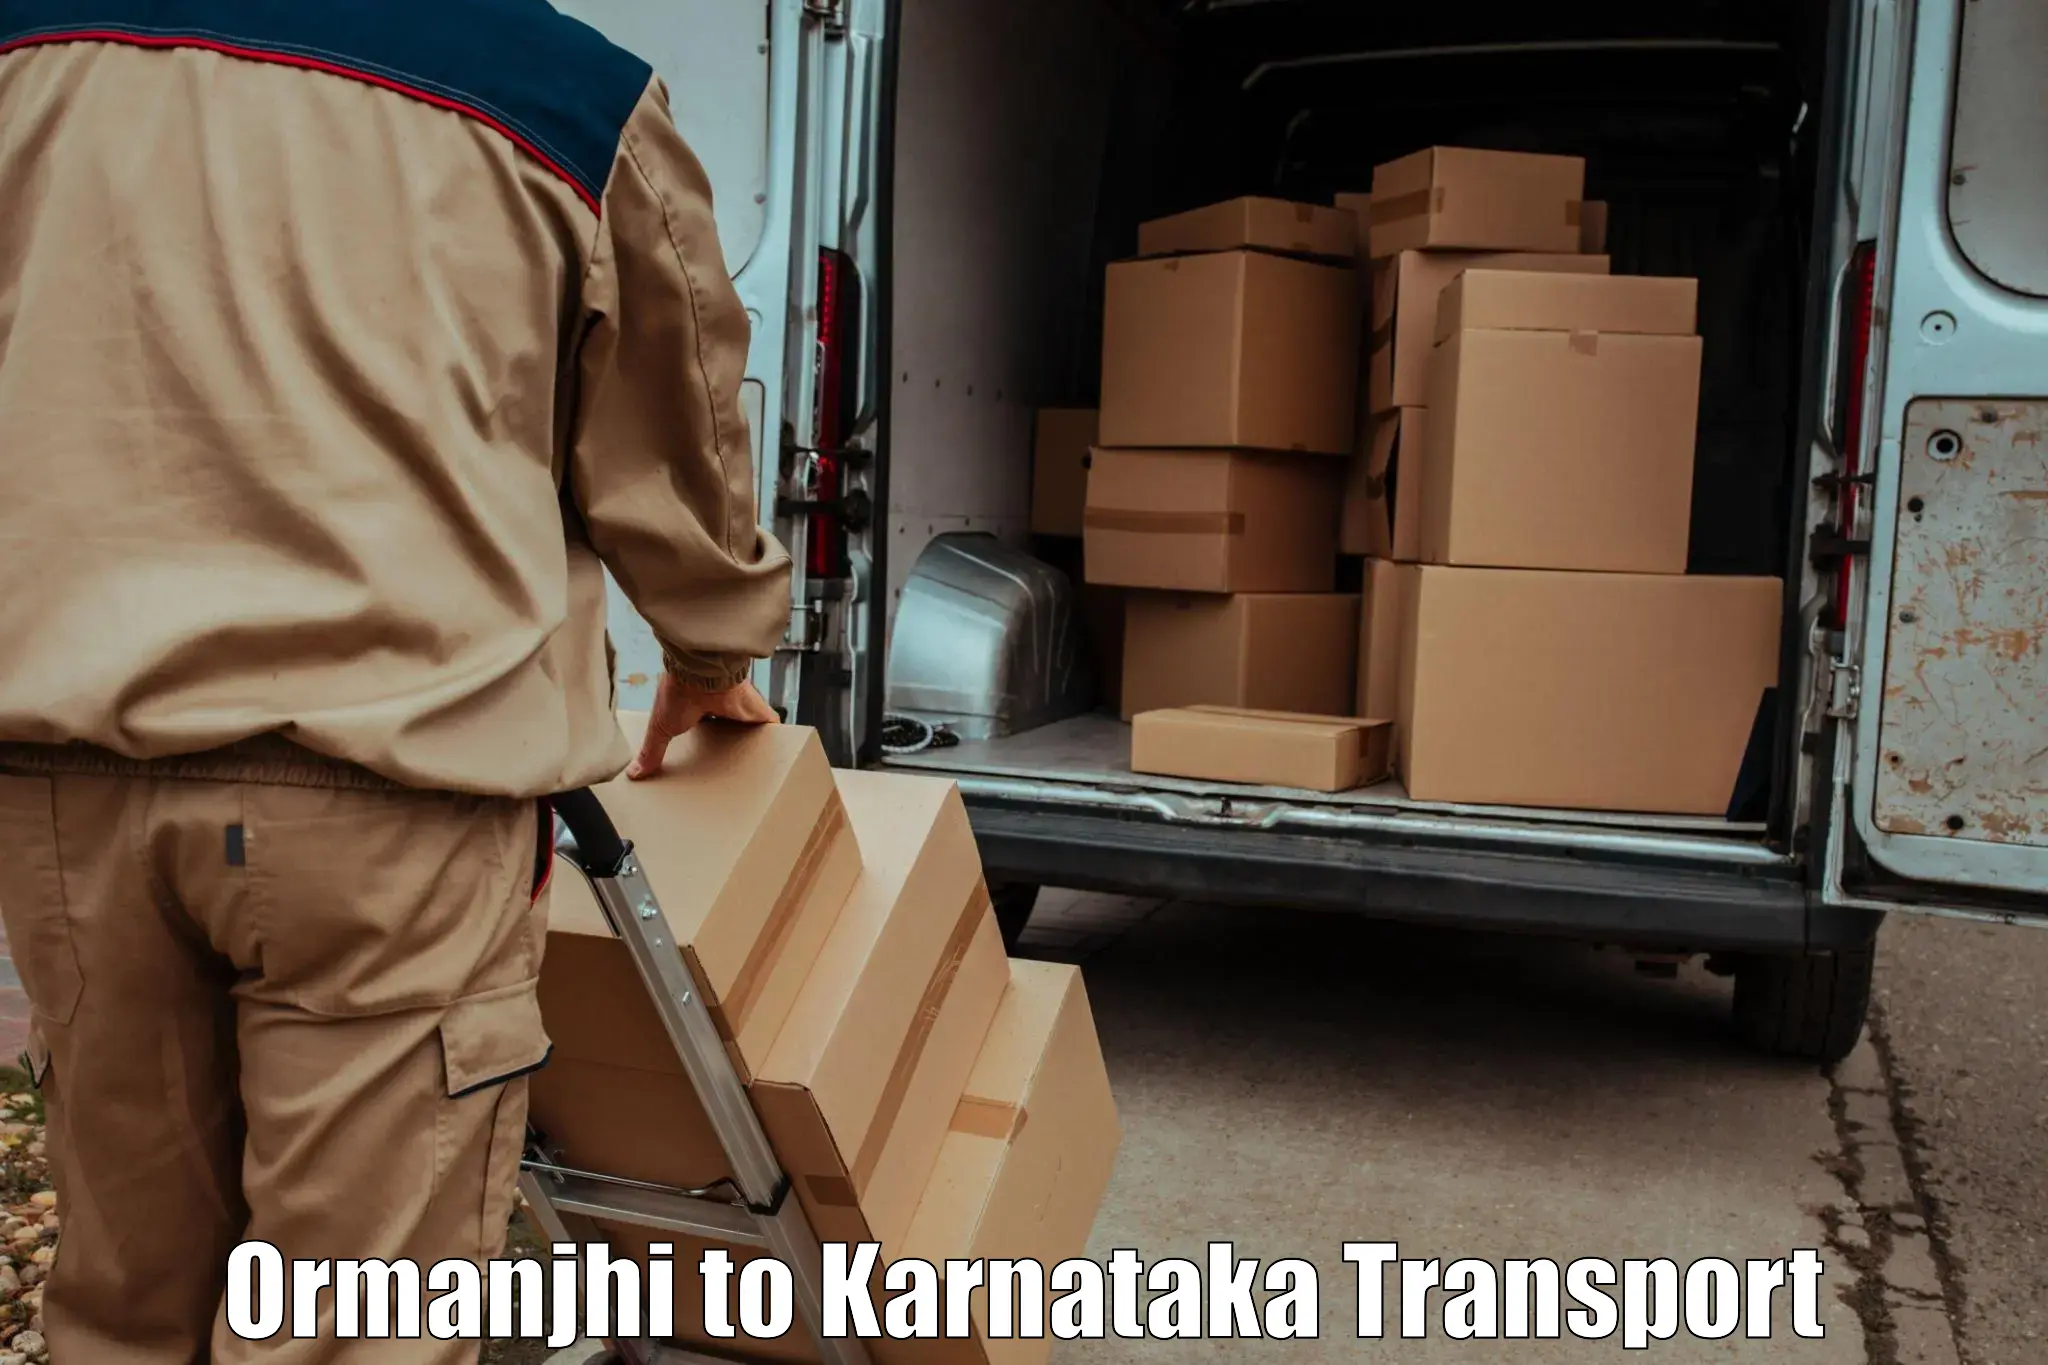 Daily transport service Ormanjhi to Channarayapatna